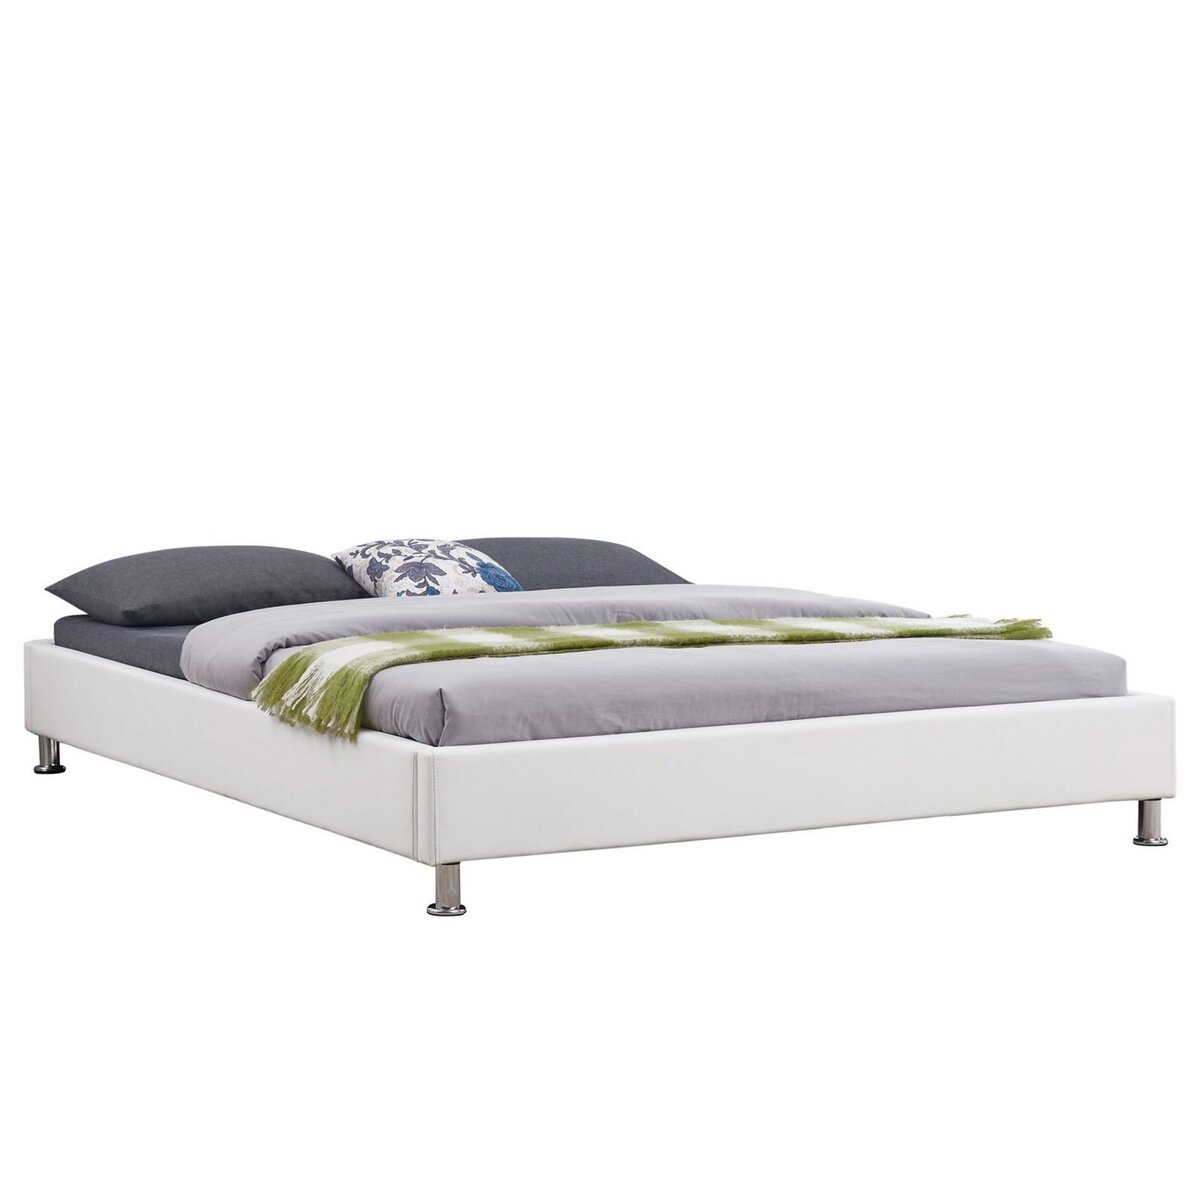 Lit futon double pour adulte NIZZA queen size 160x200 cm 2 places